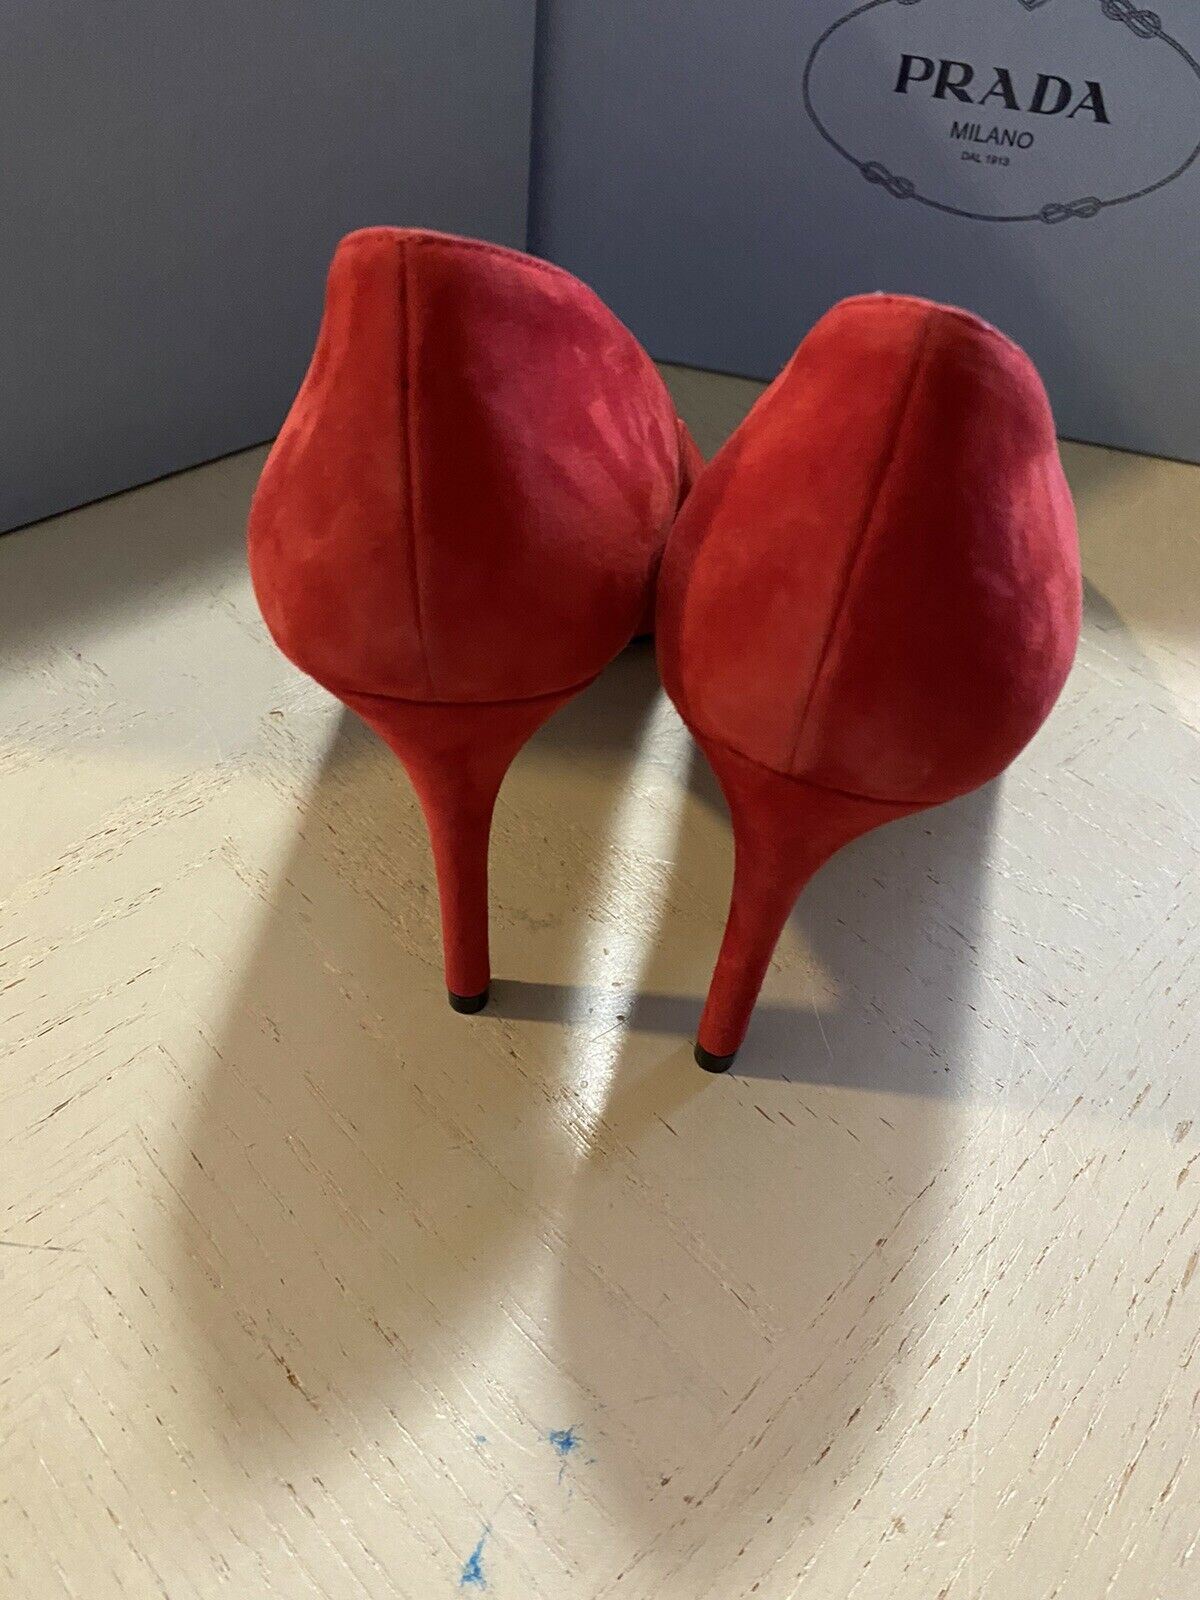 NIB $750 PRADA Women Scallop Suede Pumps Shoes Rose 10 US/40 Eu Italy